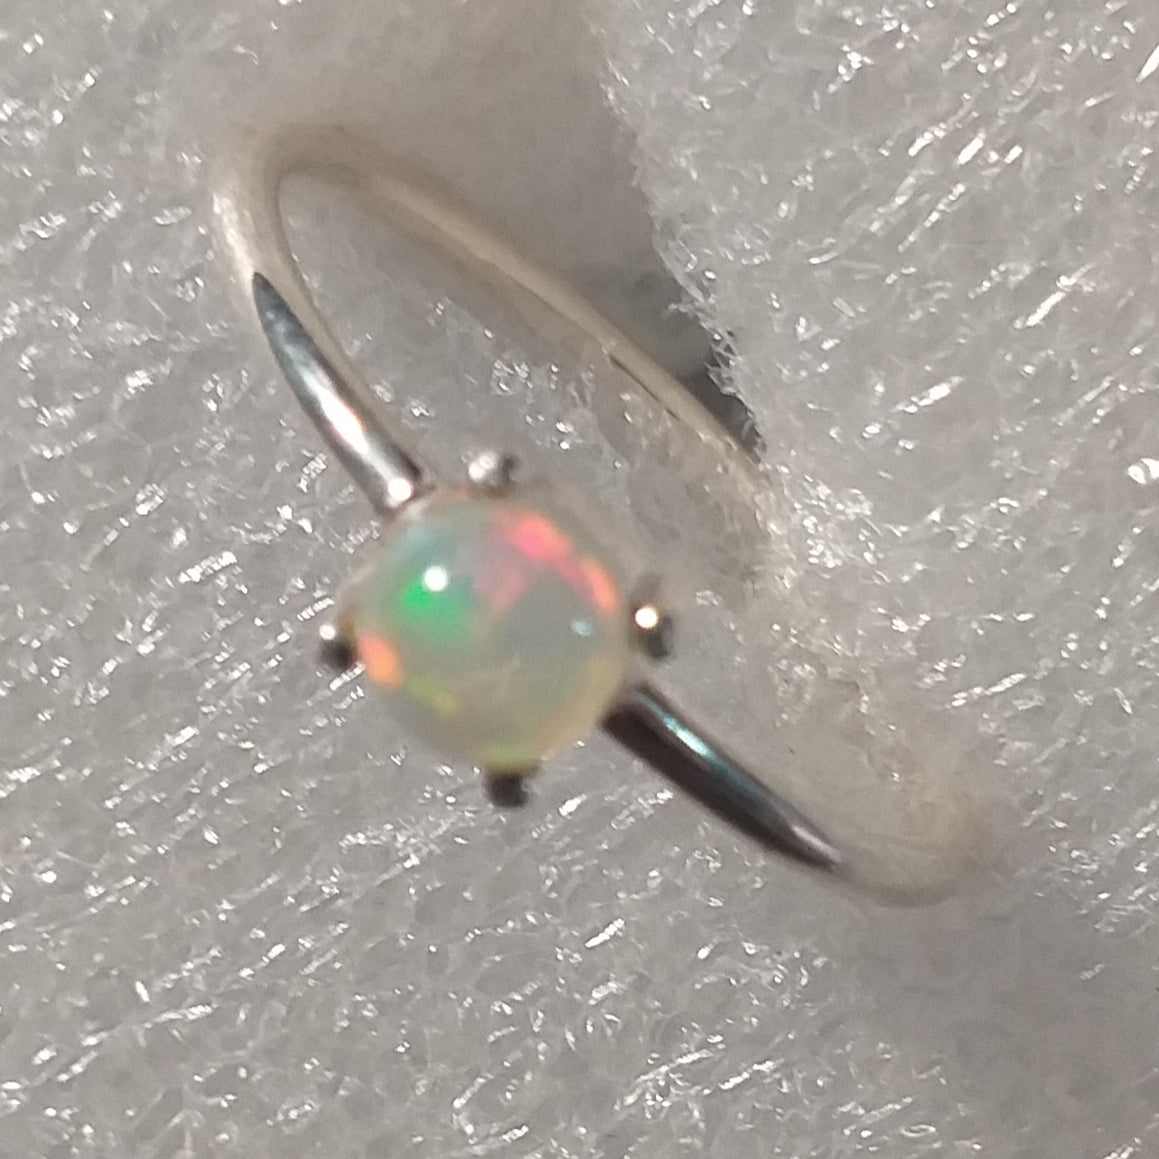 echter Natur OPAL Kristallopal Ring Gr. 19 925 Silber Welo